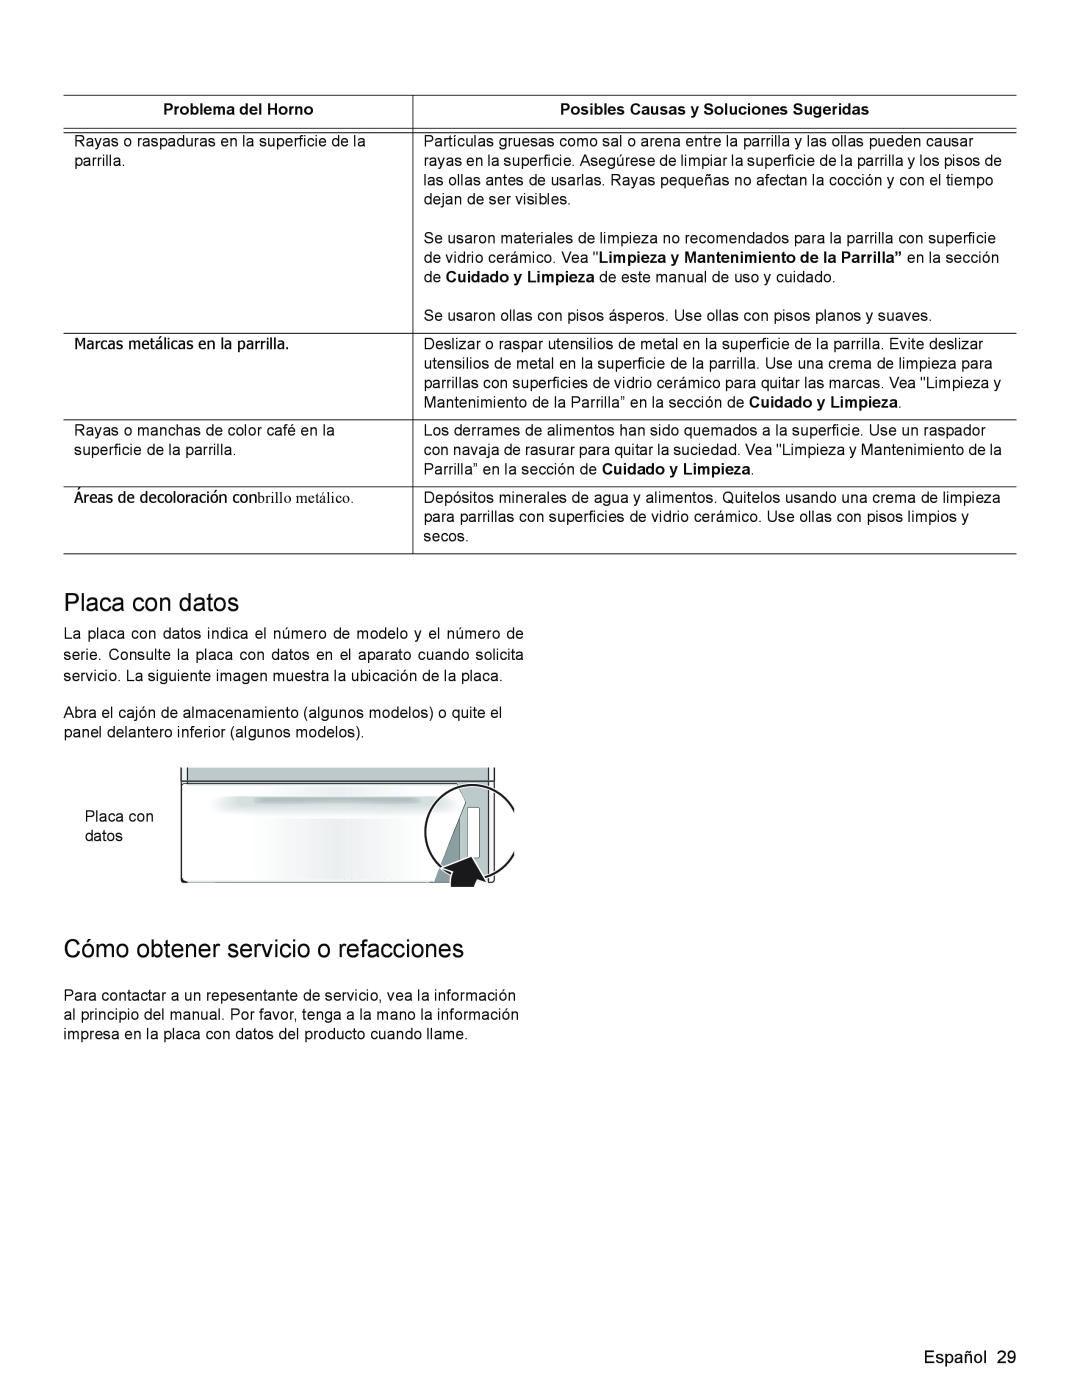 Bosch Appliances HES3063U manual Placa con datos, Cómo obtener servicio o refacciones, Problema del Horno 